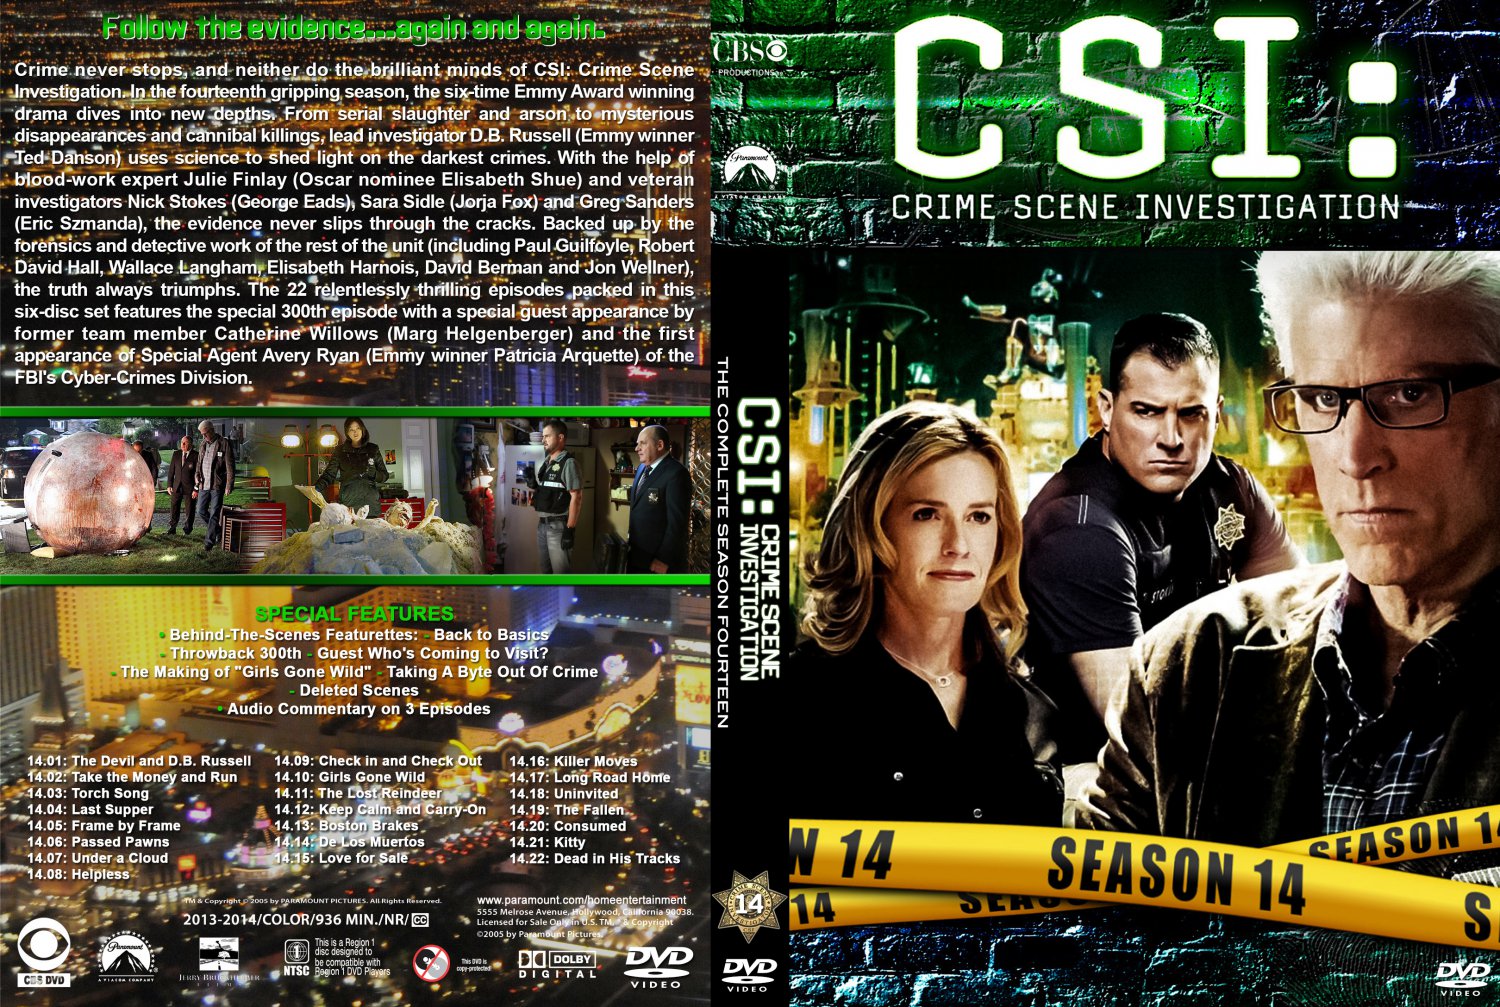 TVsubtitlesnet - Download subtitles for CSI season 14